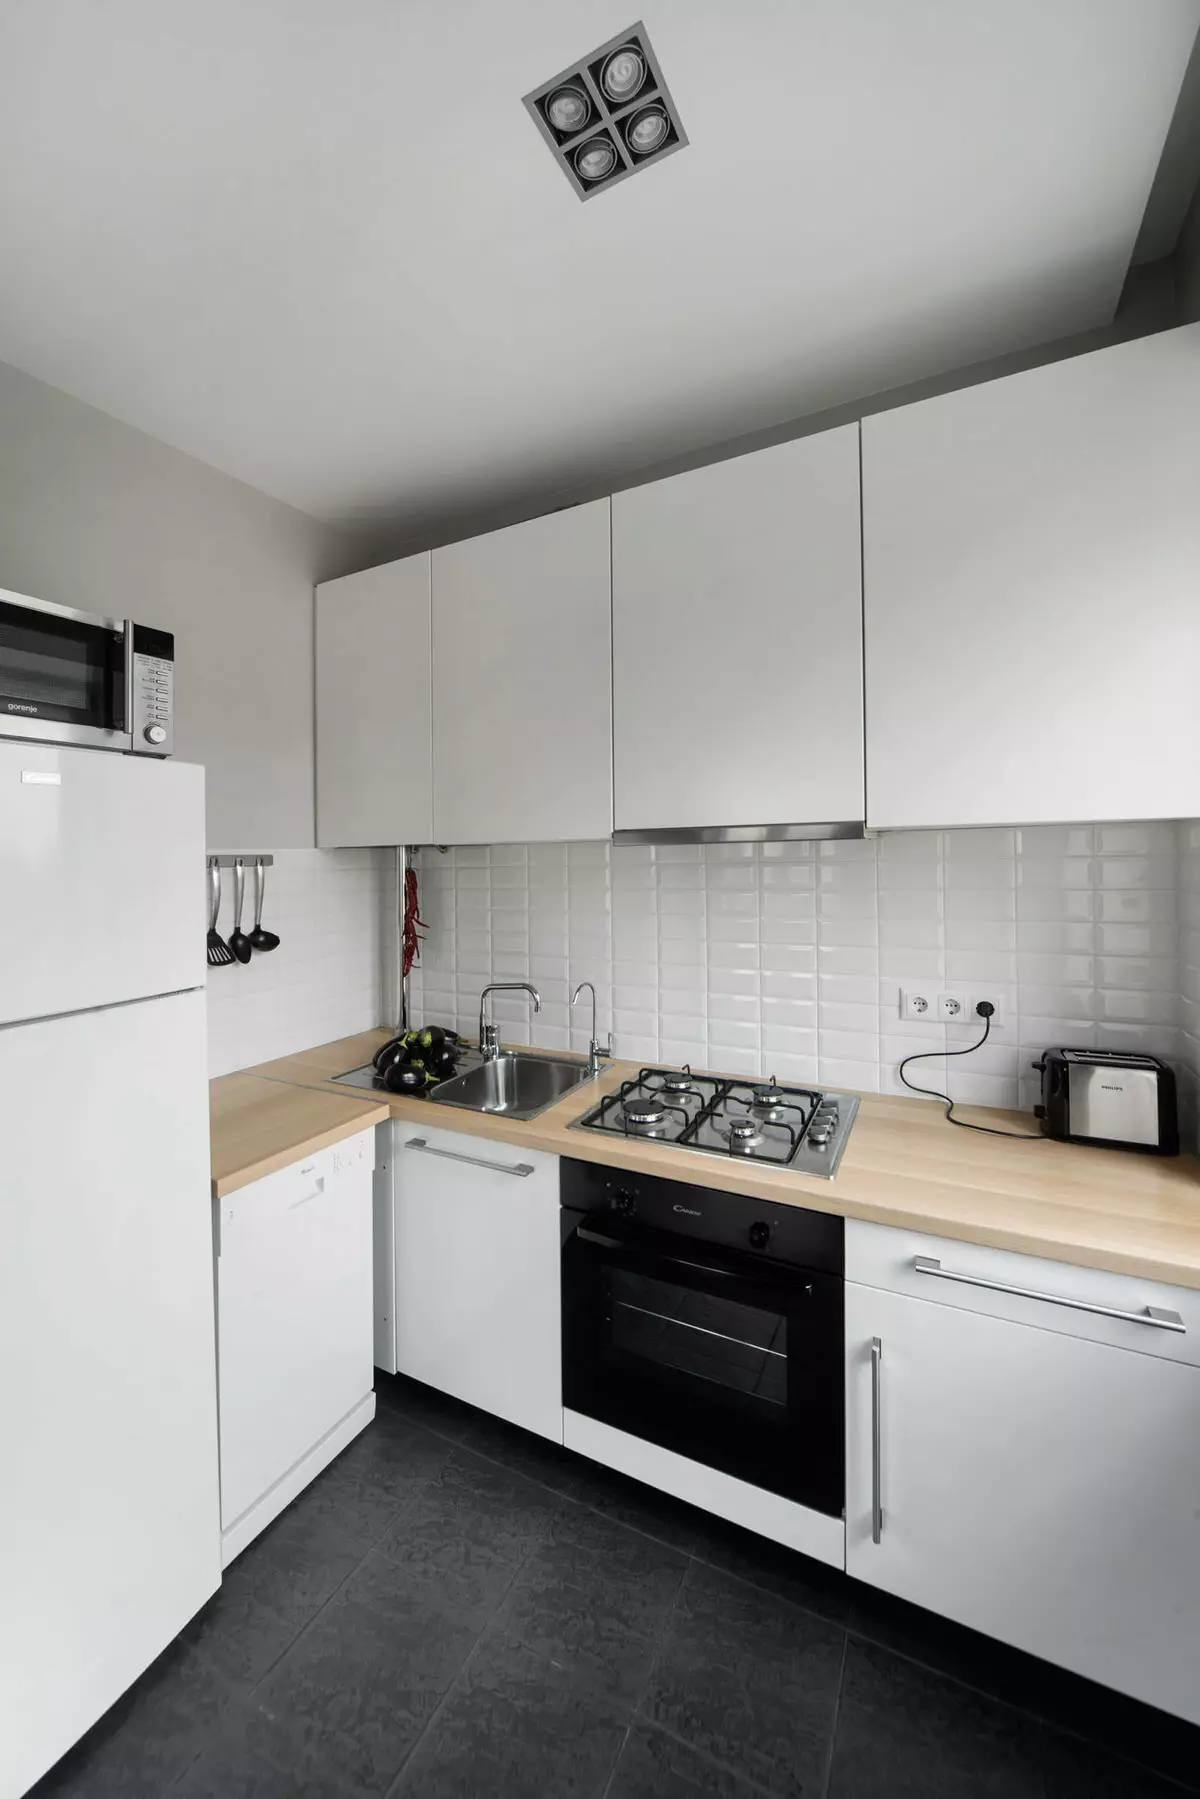 การออกแบบห้องครัวใน Khrushchev 6 ตารางเมตร m ด้วยตู้เย็น (65 รูป): เค้าโครงและห้องครัวภายในขนาด 6 สี่เหลี่ยม 9424_45